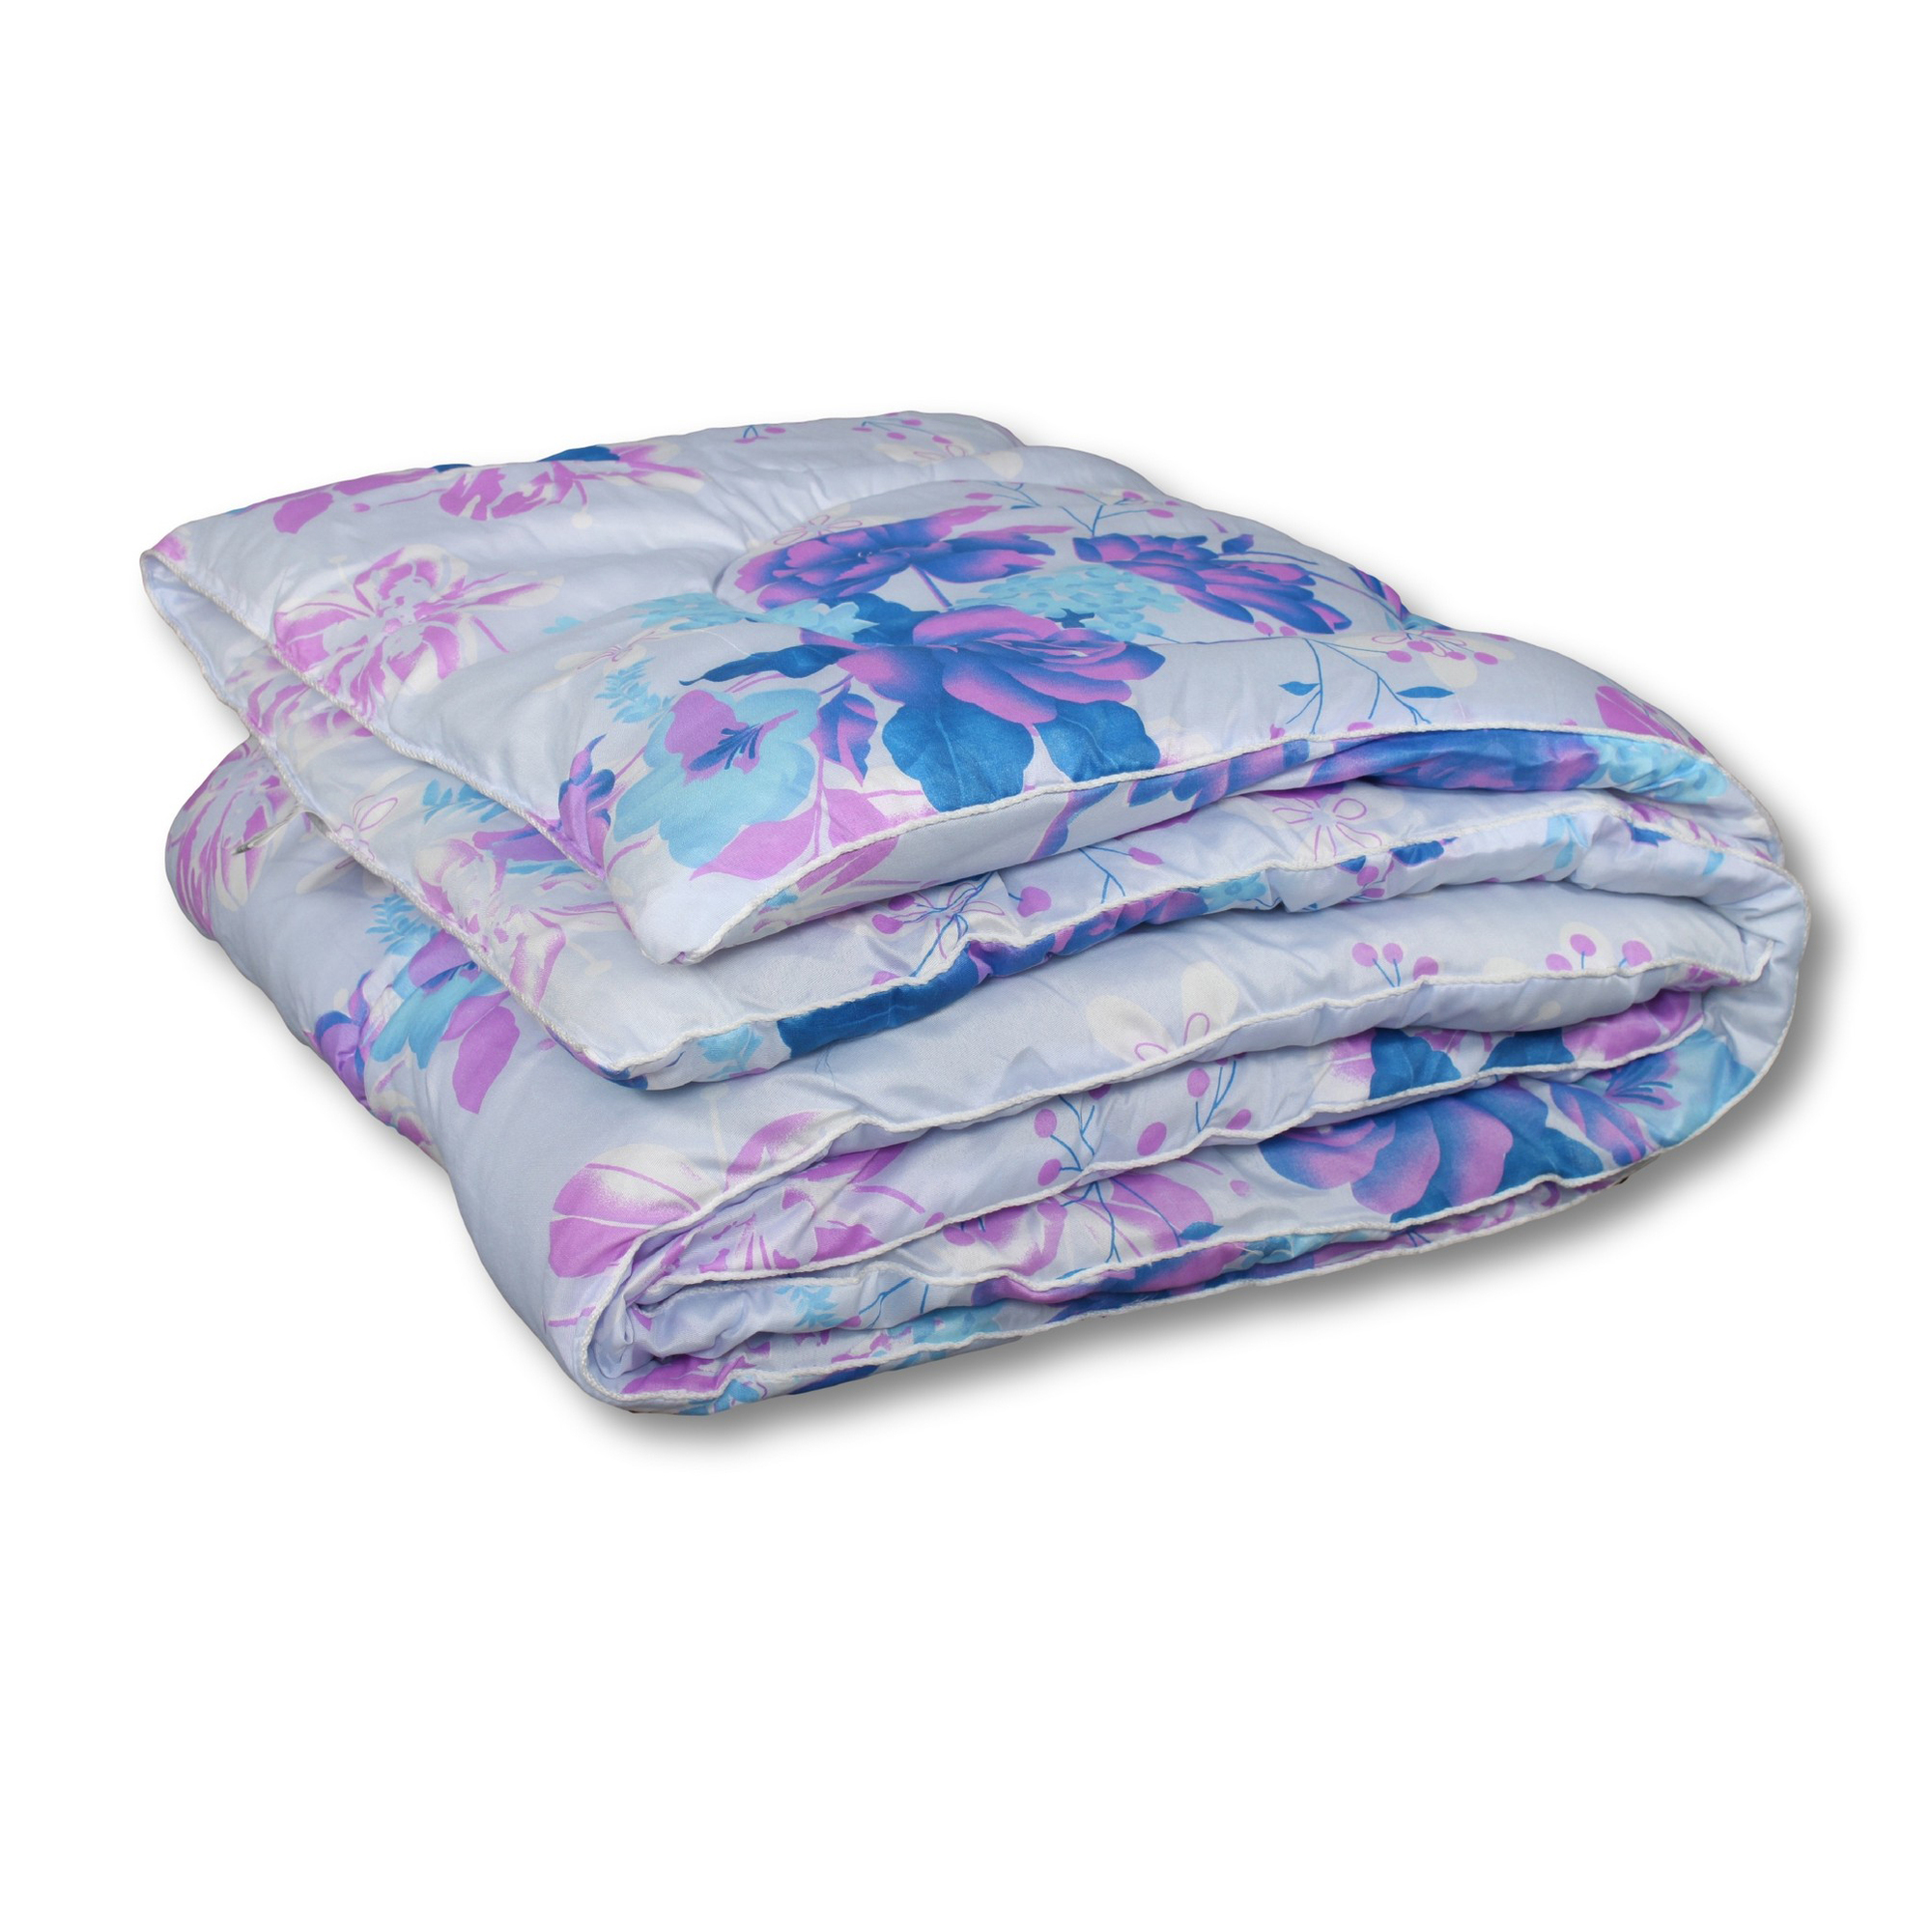 Одеяло Amanda всесезонное цвет в ассортименте (140х205 см), размер 140х205 см avt747420 Одеяло Amanda всесезонное цвет в ассортименте (140х205 см) - фото 1